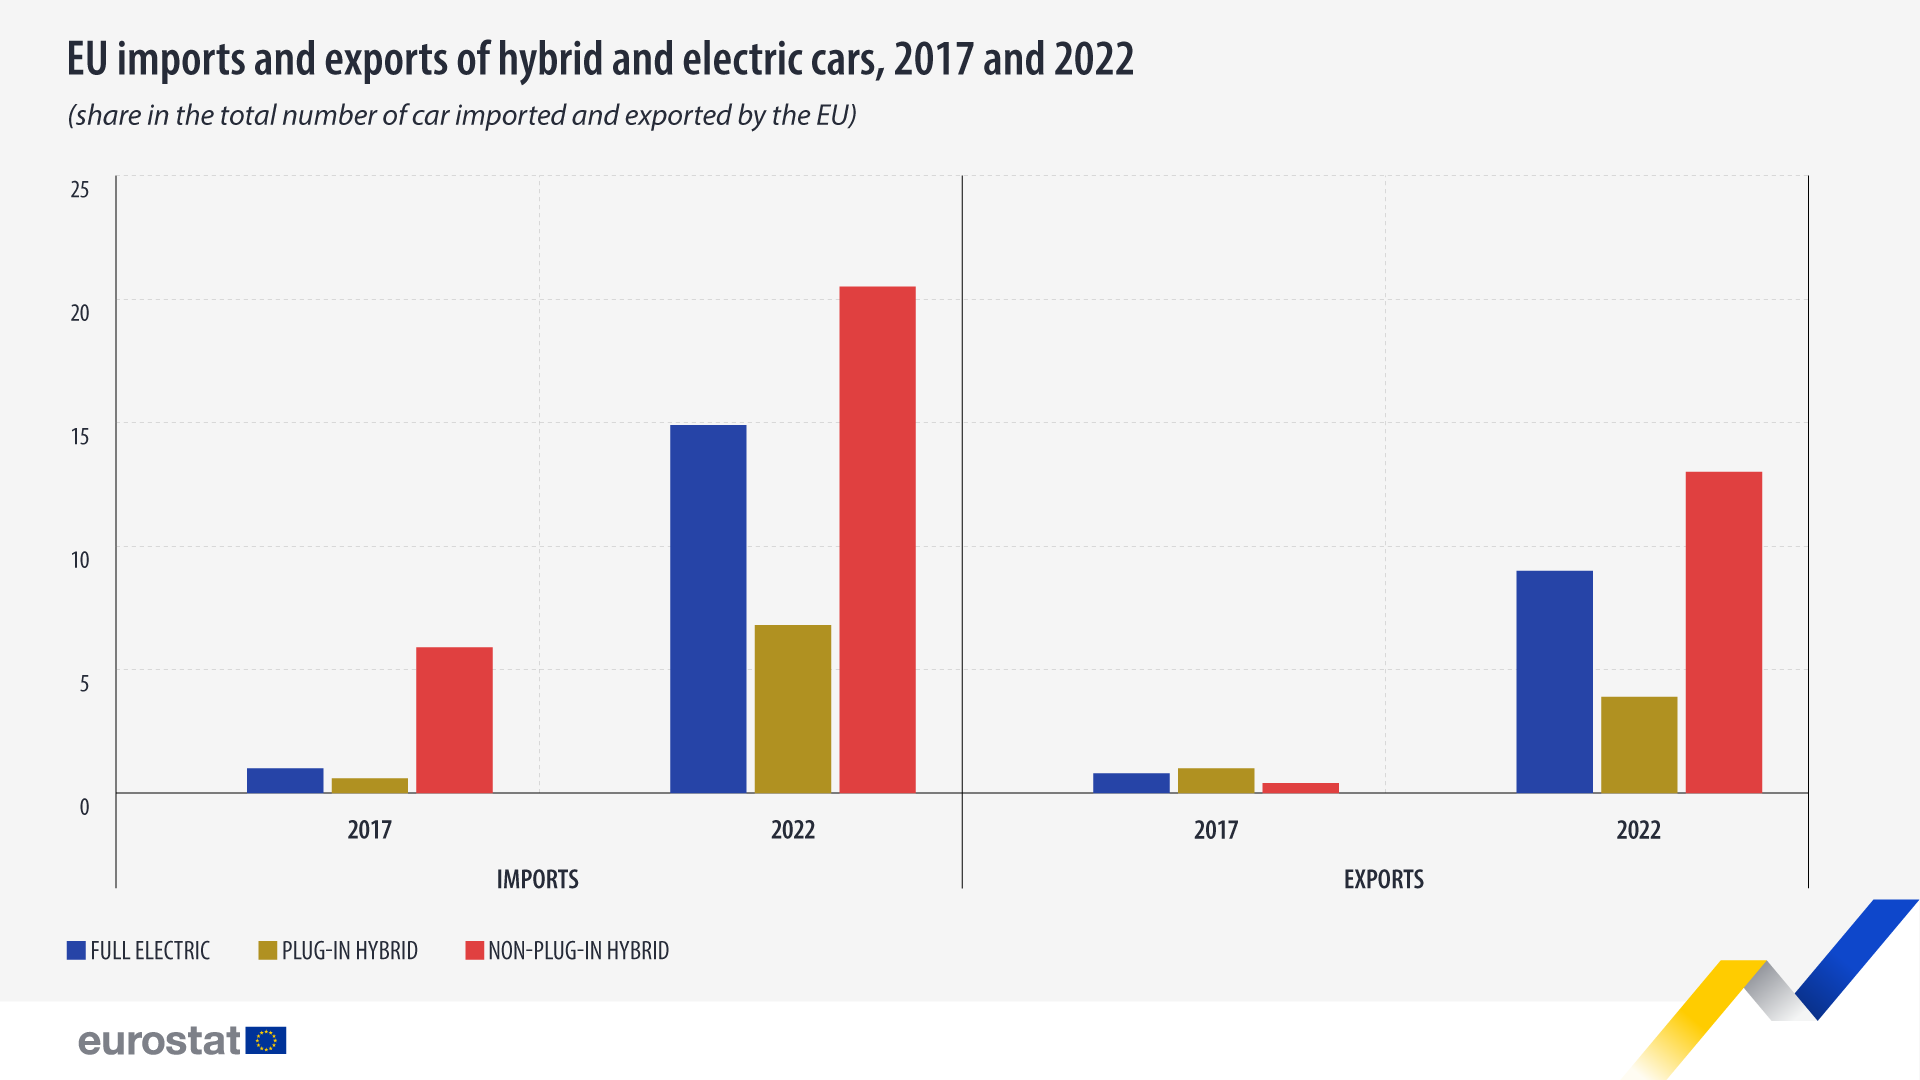 Balkendiagramm: EU-Importe und -Exporte von Hybrid- und Elektroautos, 2017 und 2022, Anteil an der Gesamtzahl der von der EU importierten und exportierten Autos